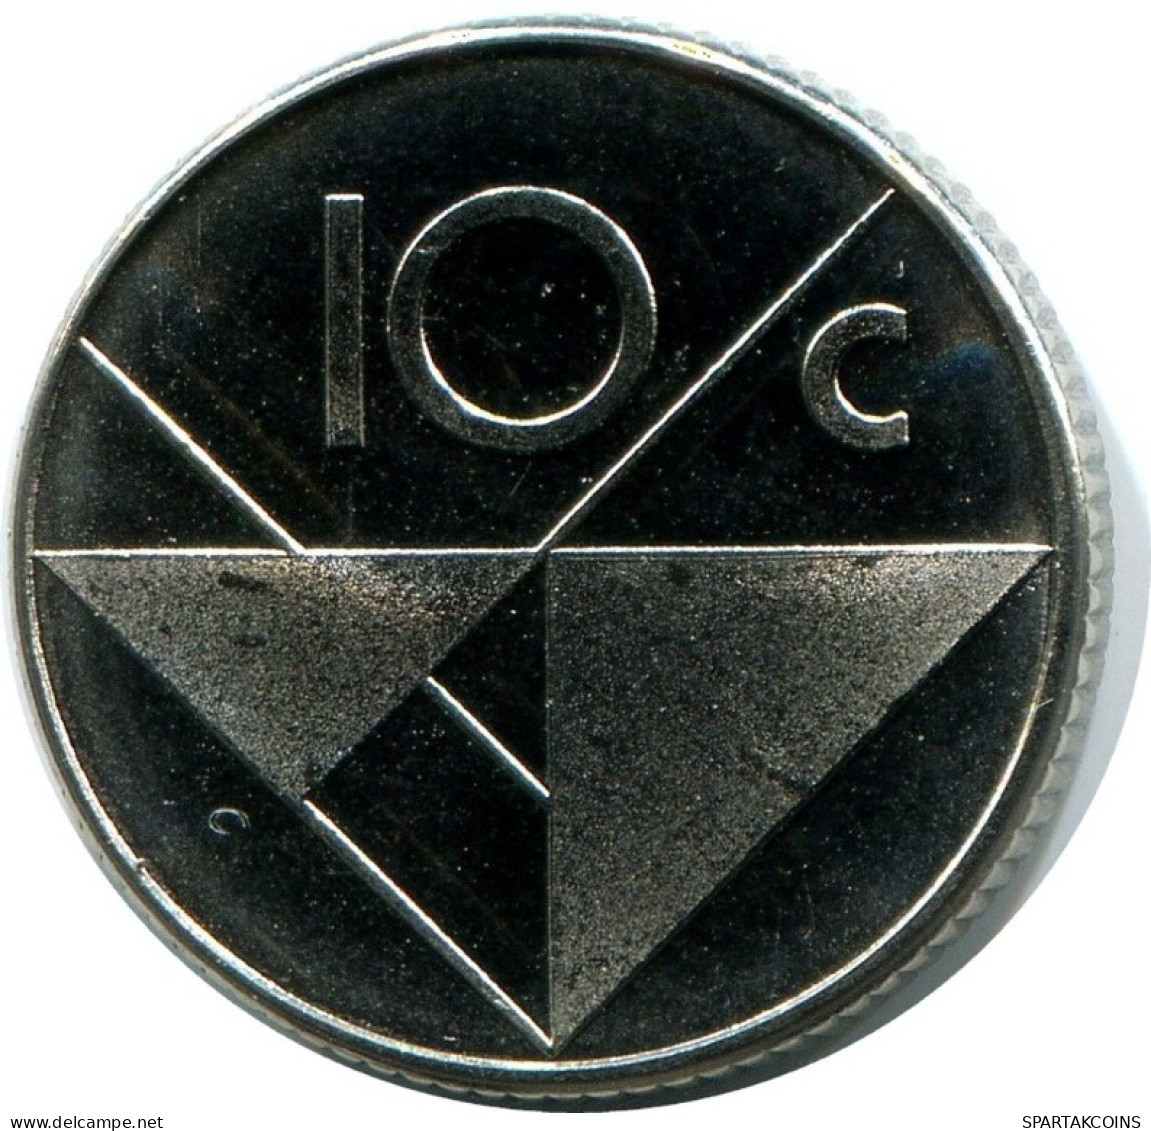 10 CENTS 1986 ARUBA Coin (From BU Mint Set) #AH076.U.A - Aruba